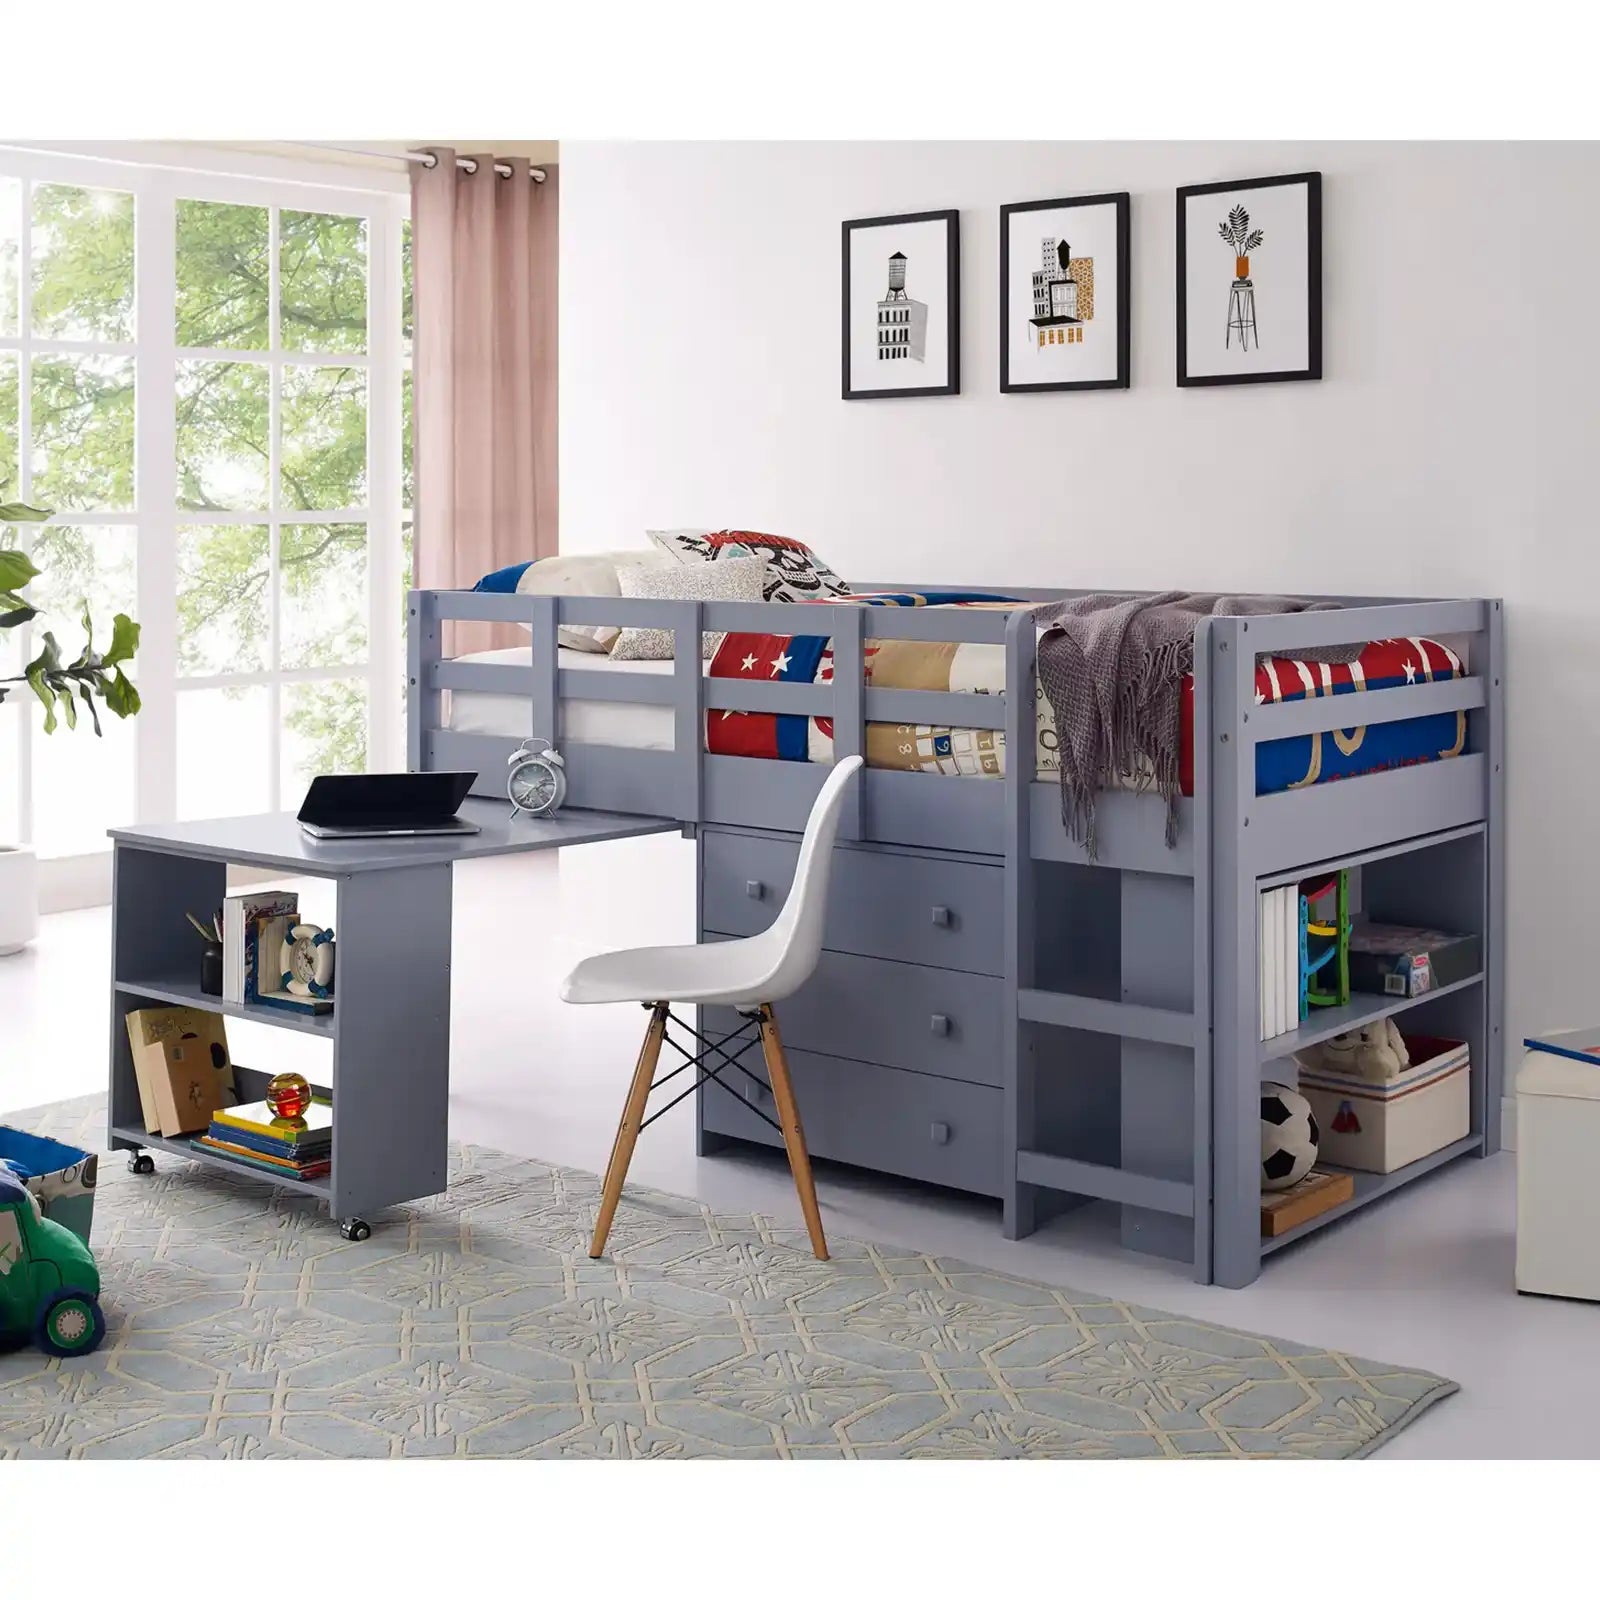 Cama doble con escritorio Estudio bajo Cama alta para niños con escritorio y espacio de almacenamiento 